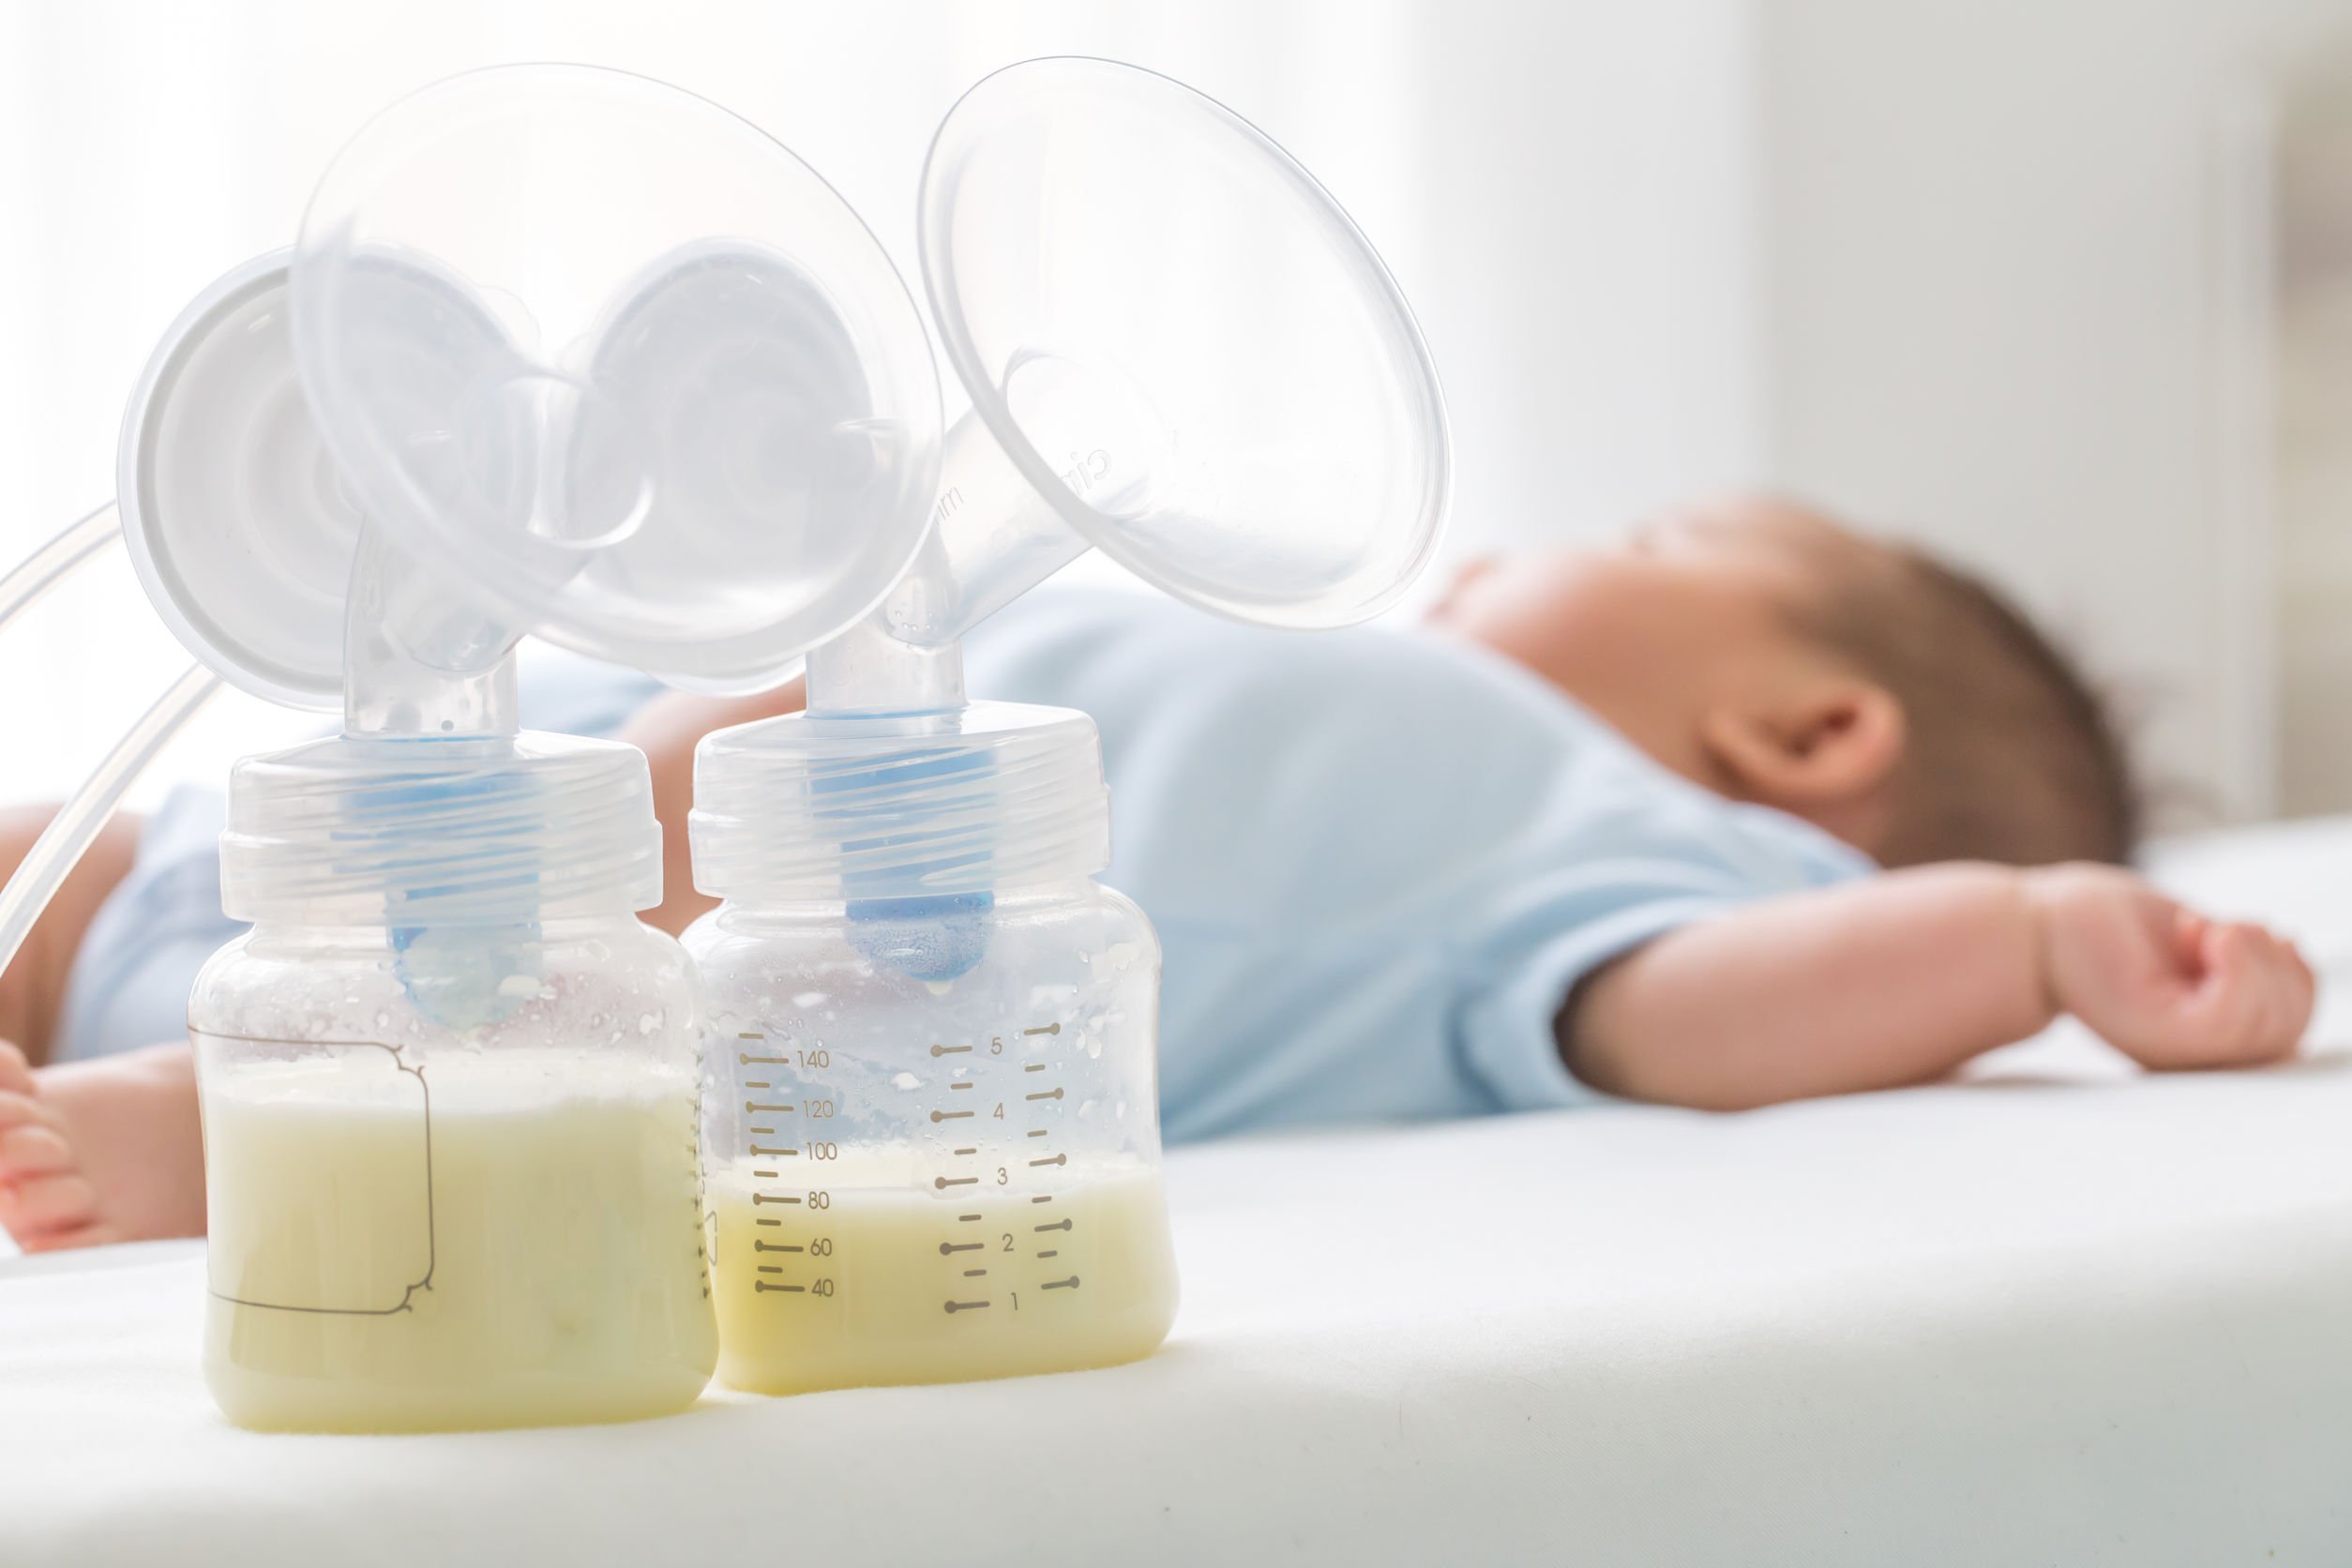 Bebê deitado em cama branca, ao lado há o recipiente de duas bombas elétricas de leite materno